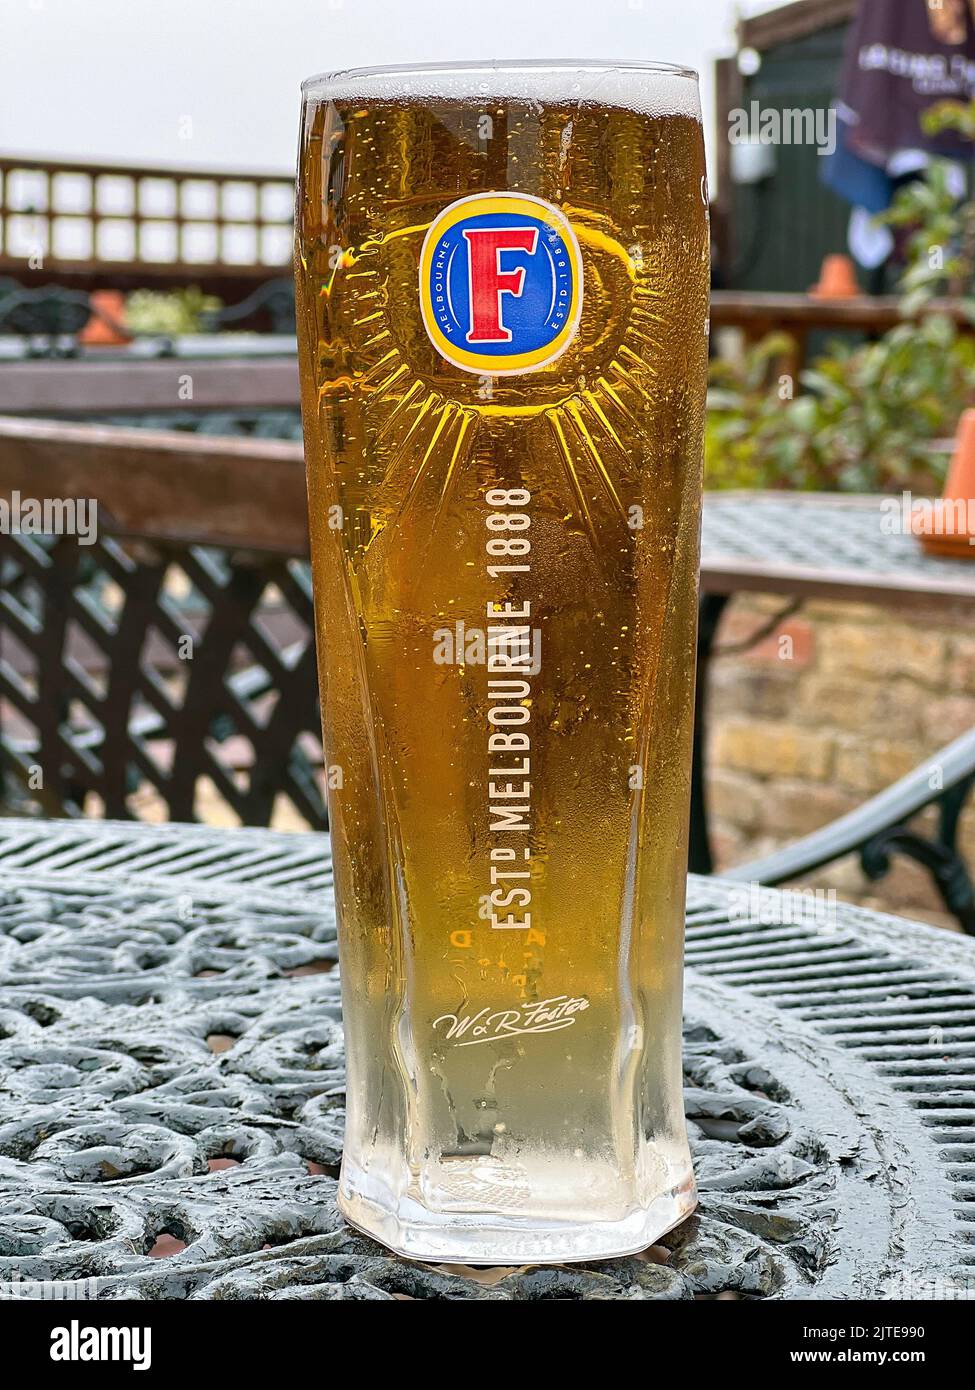 Folkestone, Angleterre - 16 août 2022: Une pinte de froid de glace favorise lager, un 4% de lager ABV originaire d'Australie. En Europe, il est brassé et distrib Banque D'Images